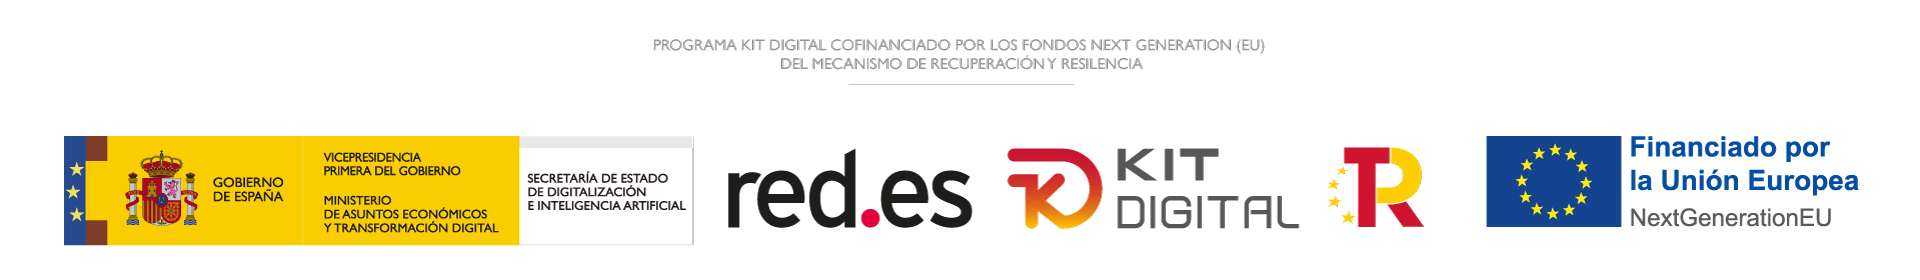 Logotipo Gobierno de España, red.es, Kit Digital, Plan de Recuperación, Transformación y Resiliencia y Financiado por la Unión Europea NextGeneration EU